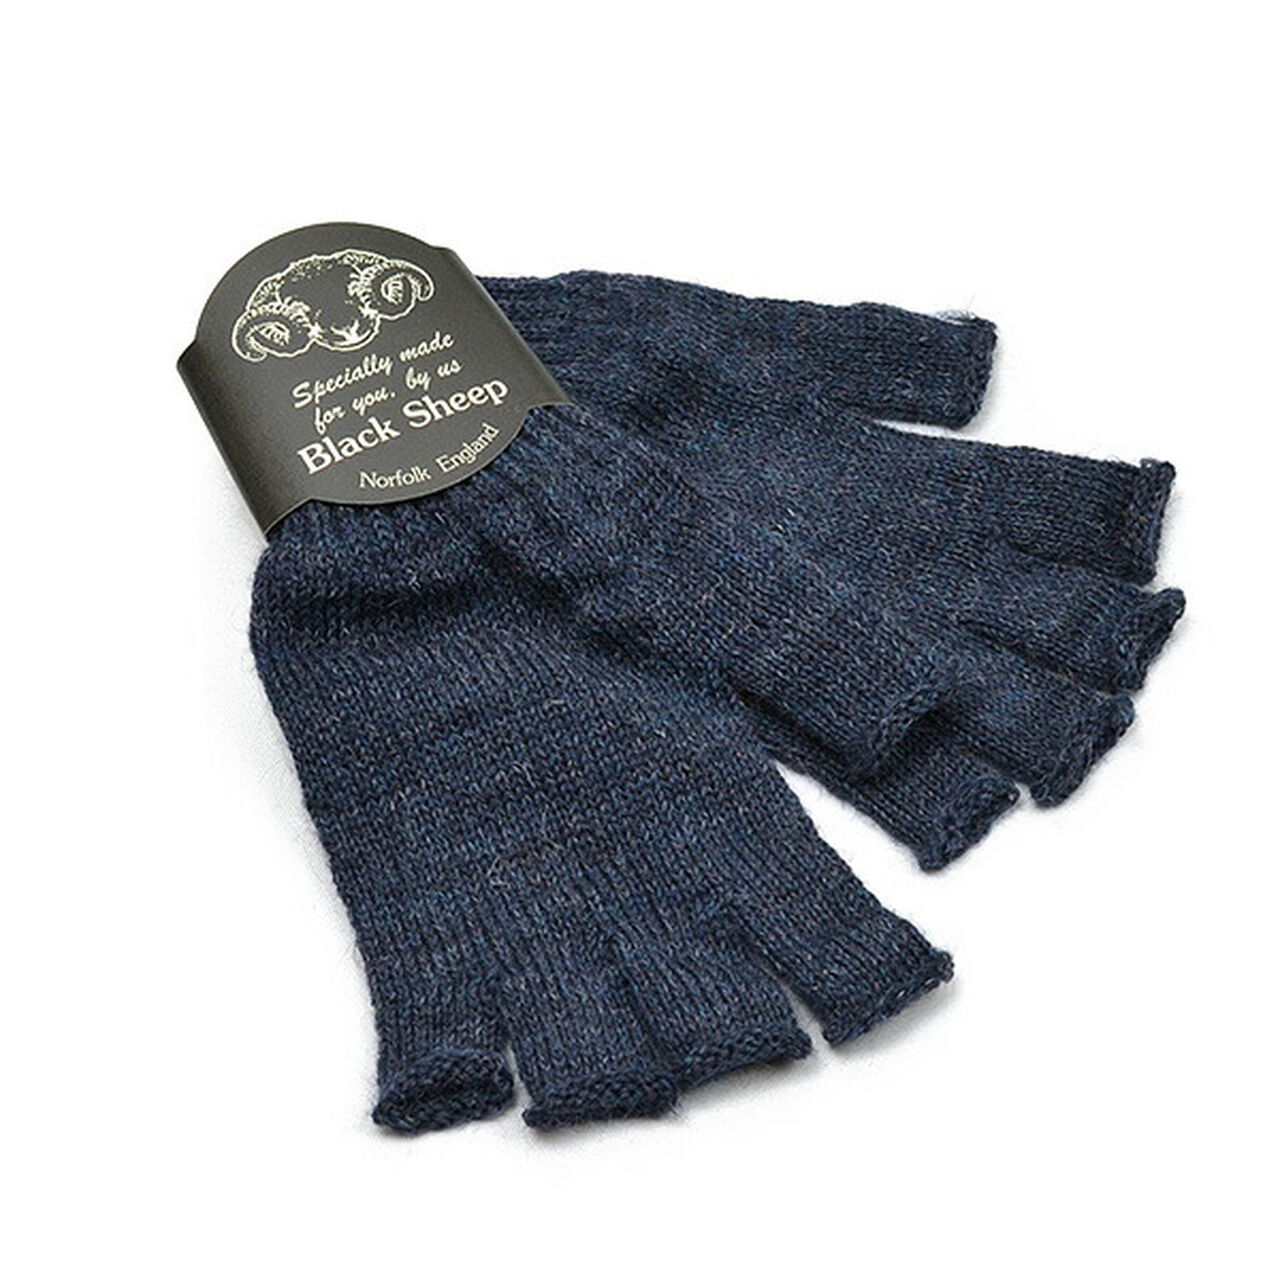 Fingerless knit gloves,DenimMix, large image number 0